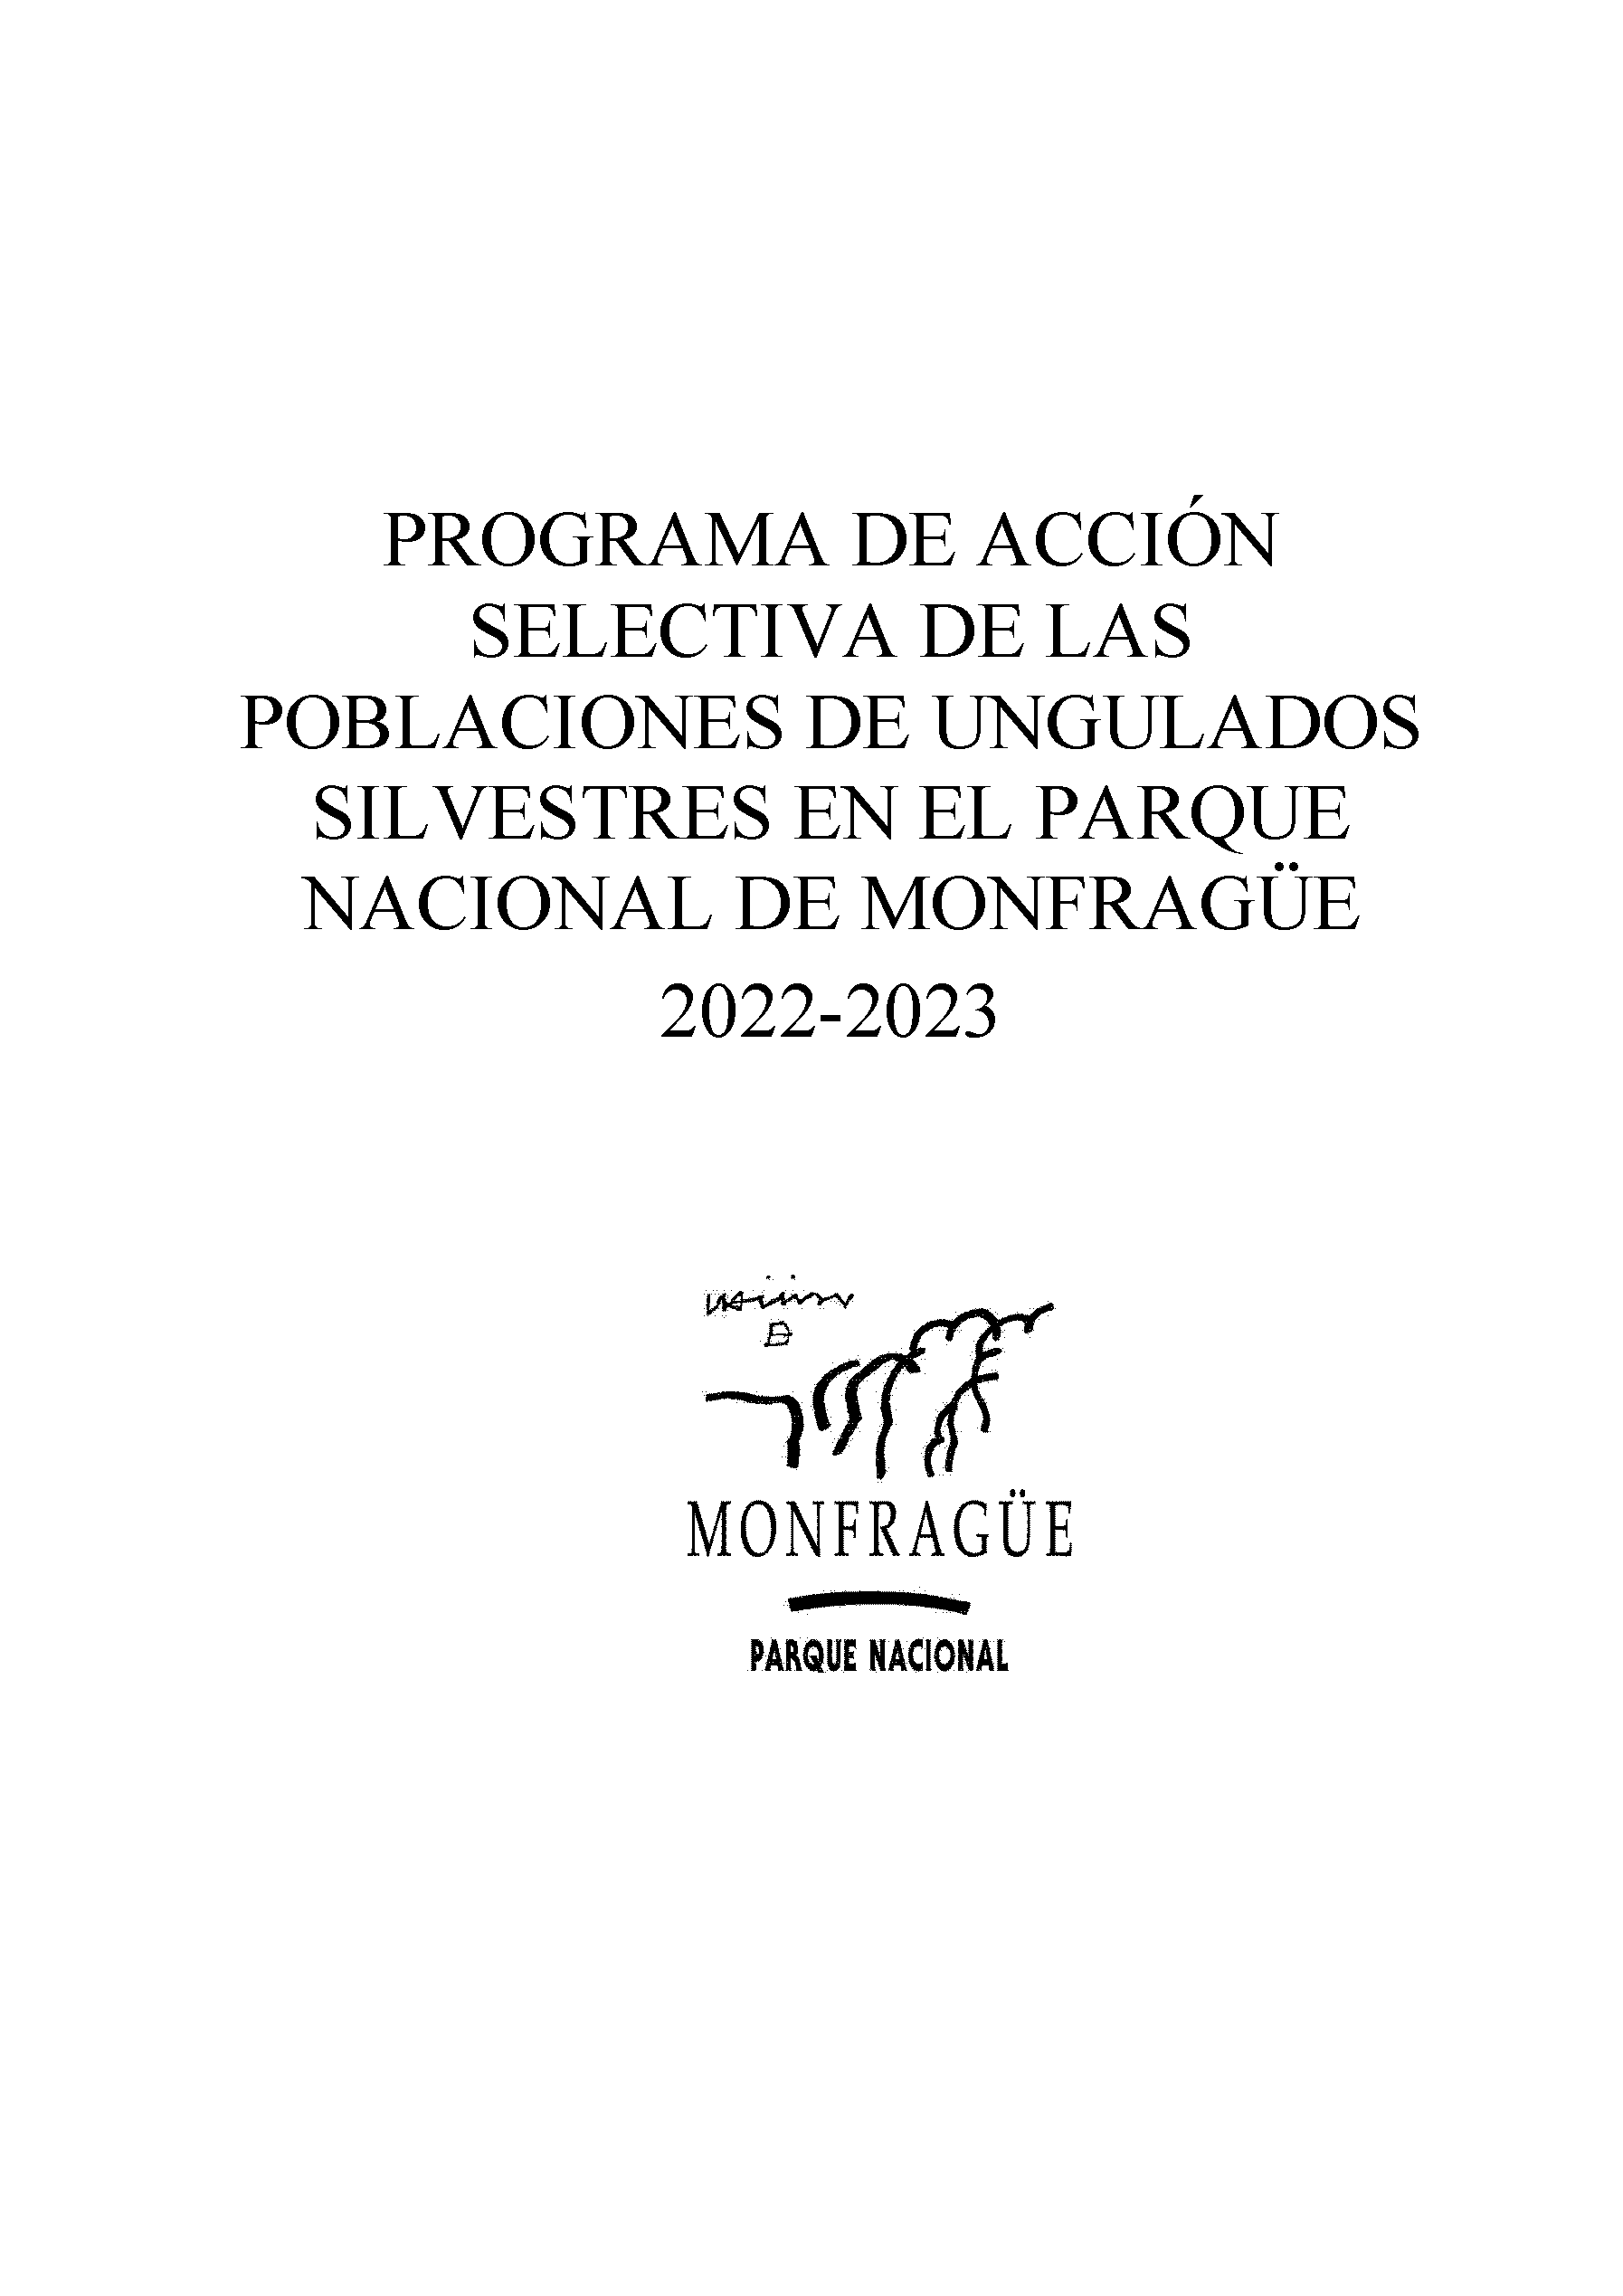 PROGRAMA DE ACCION SELECTIVA DE LAS POBLACIONES DE UNGULADOS SILVESTRES EN EL PARQUE NACIONAL DE MONFRAGUE 2022-2023 Pag 1